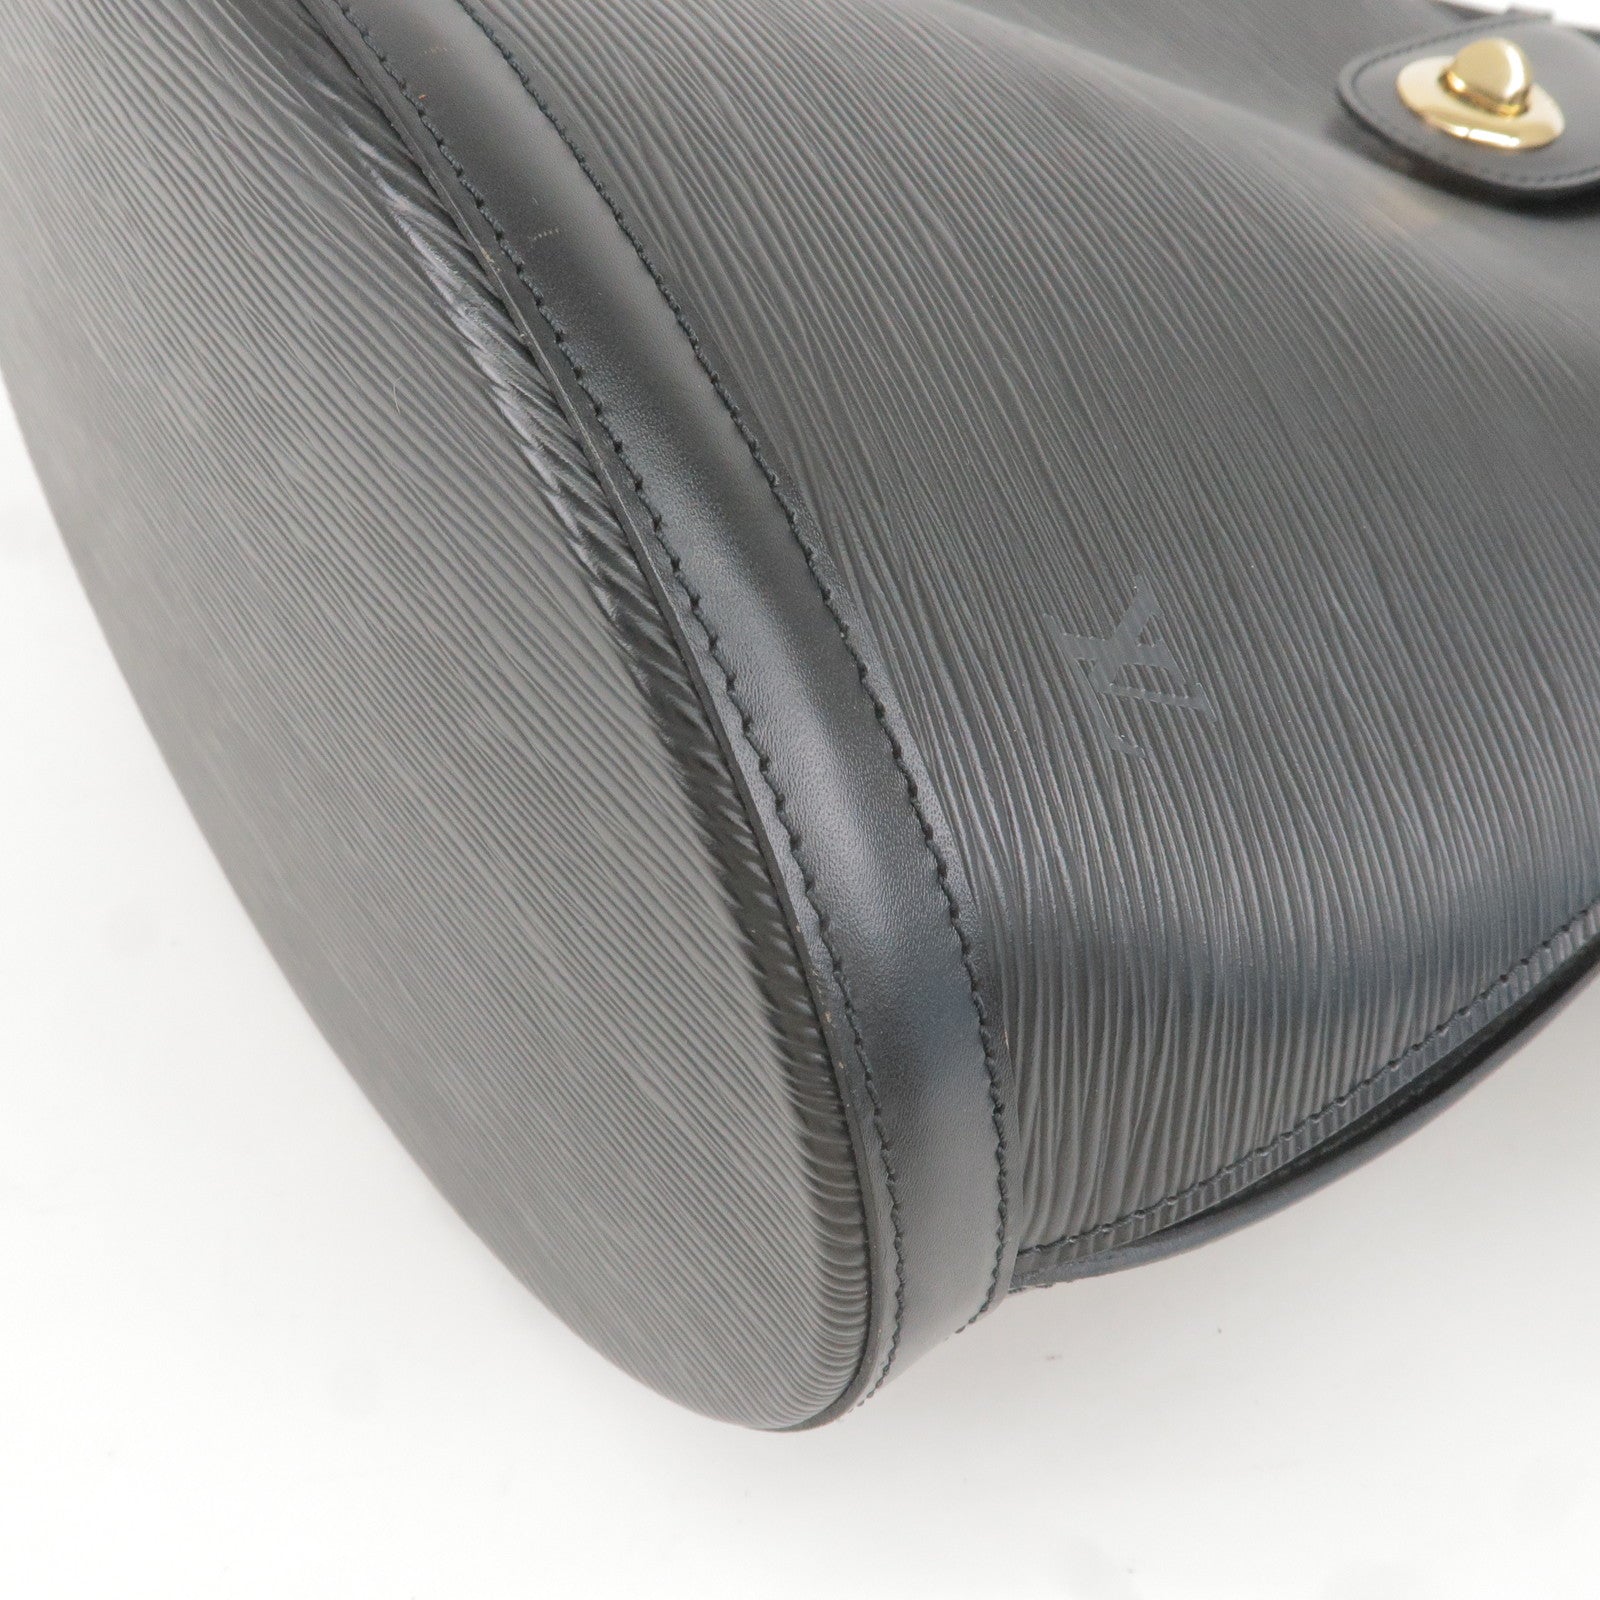 Black Louis Vuitton Epi Cluny Shoulder Bag, Infrastructure-intelligenceShops Revival